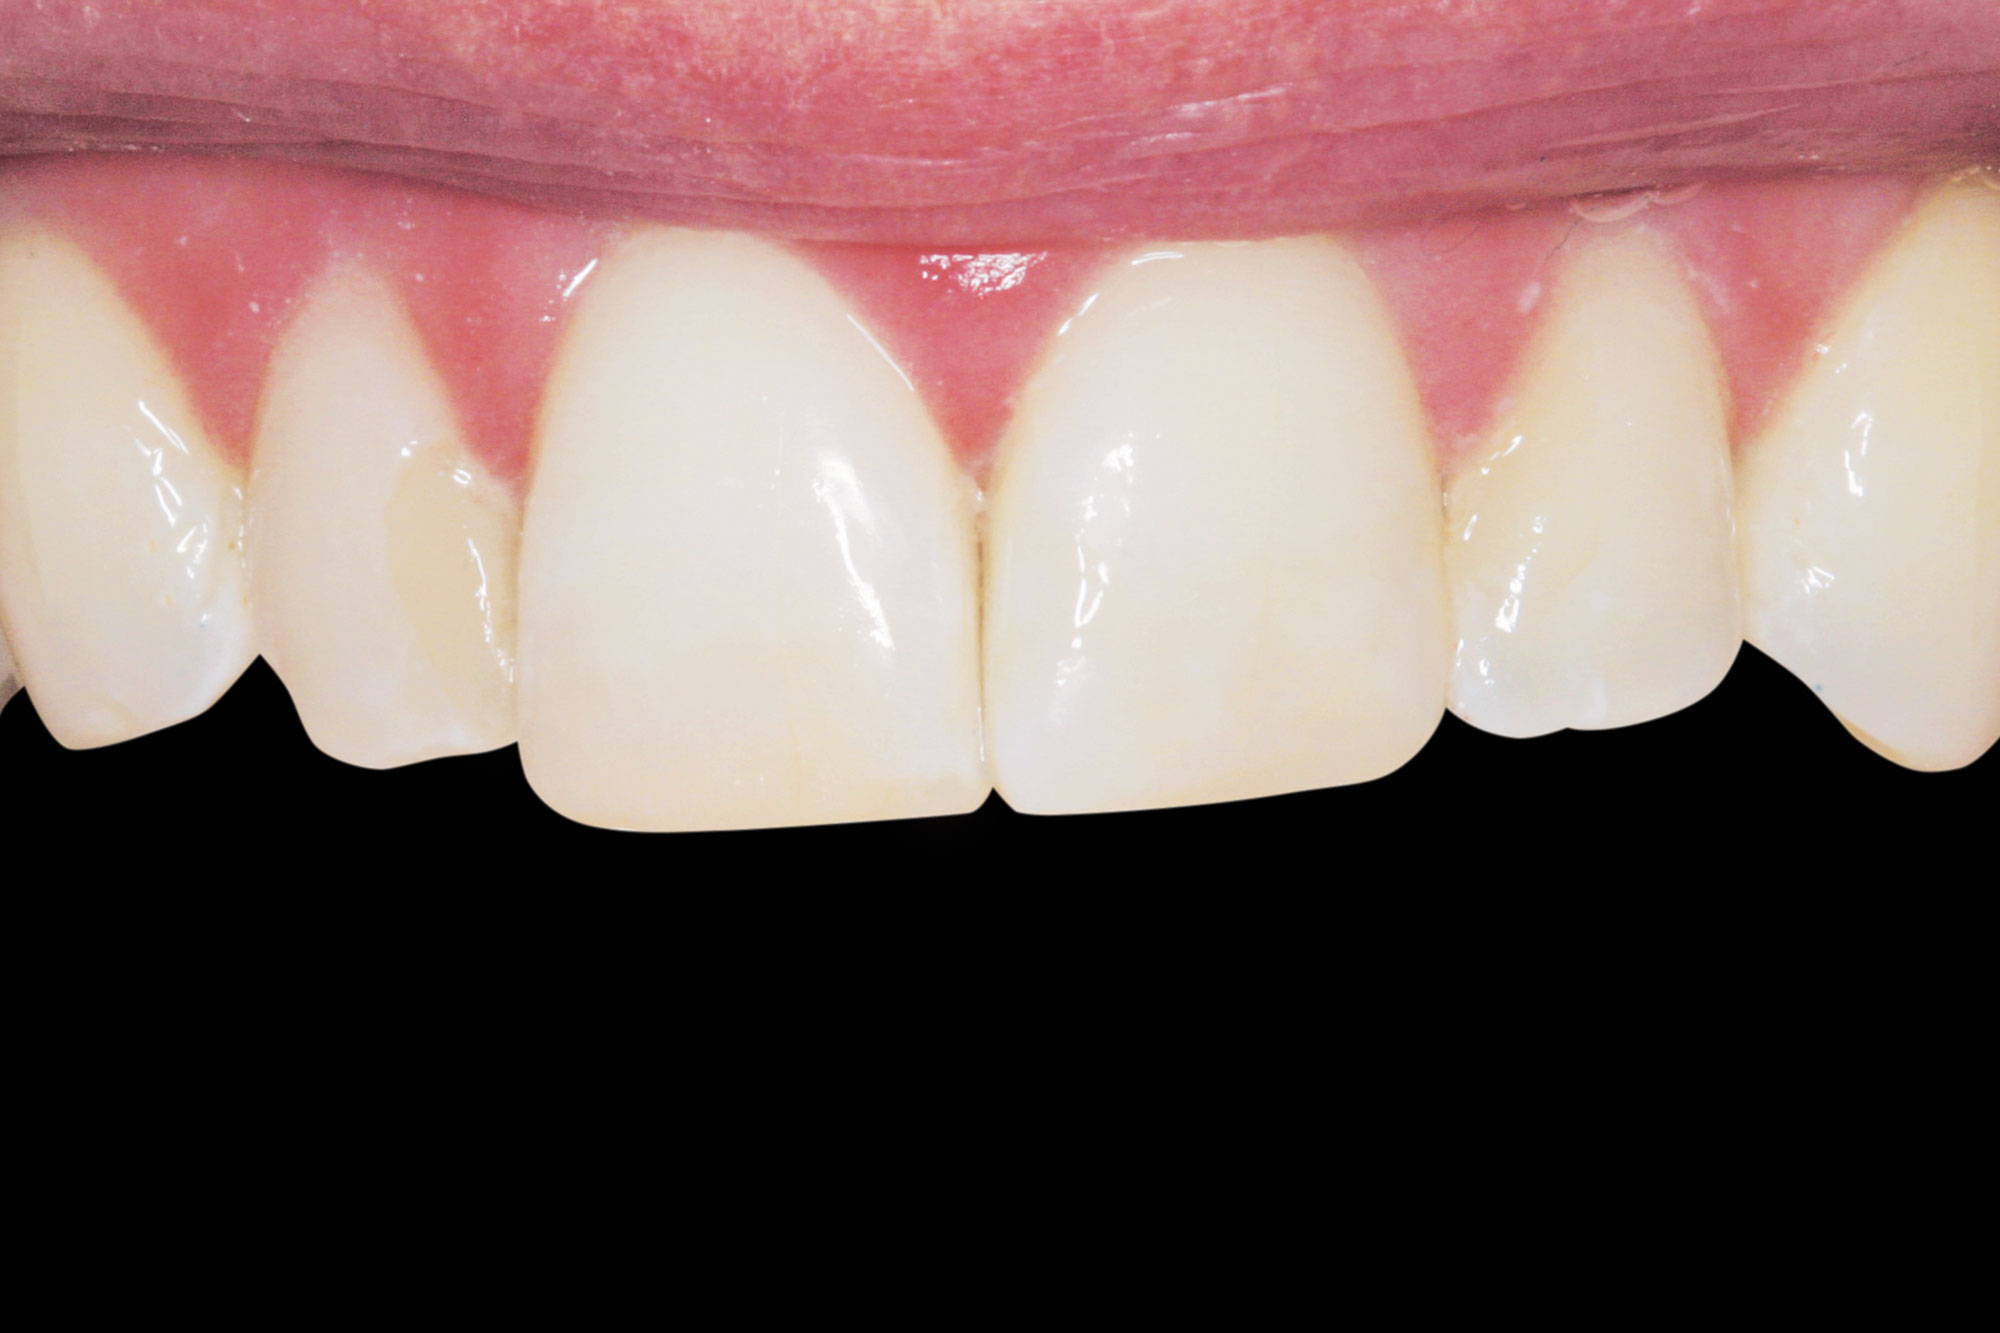 upper teeth after restoration in black background